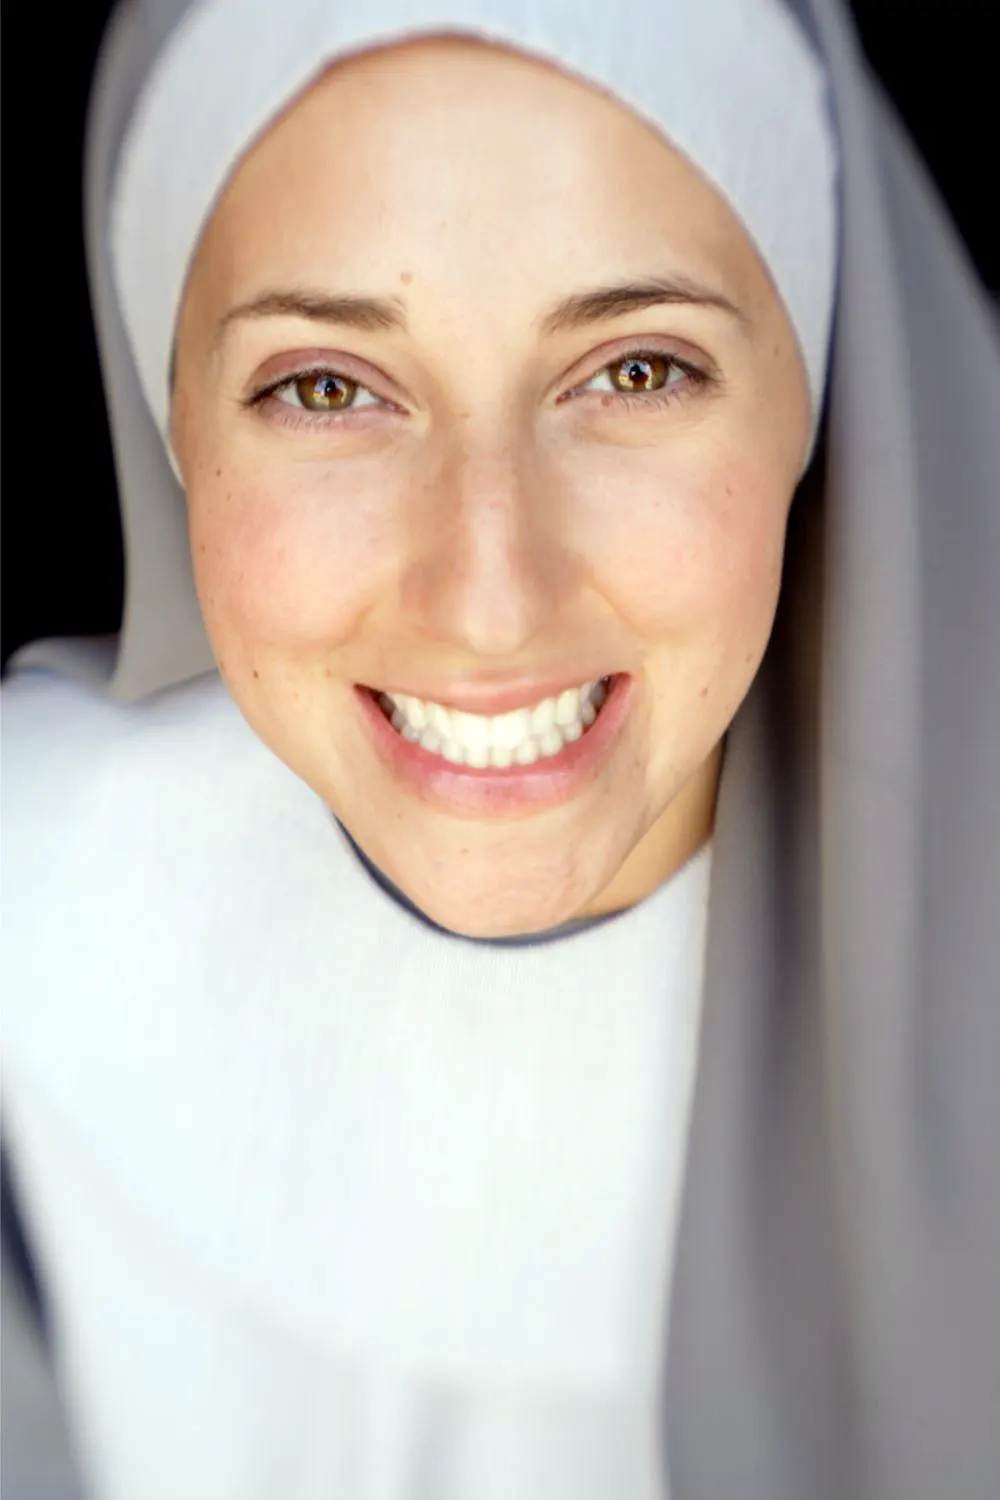 Nun wearing white